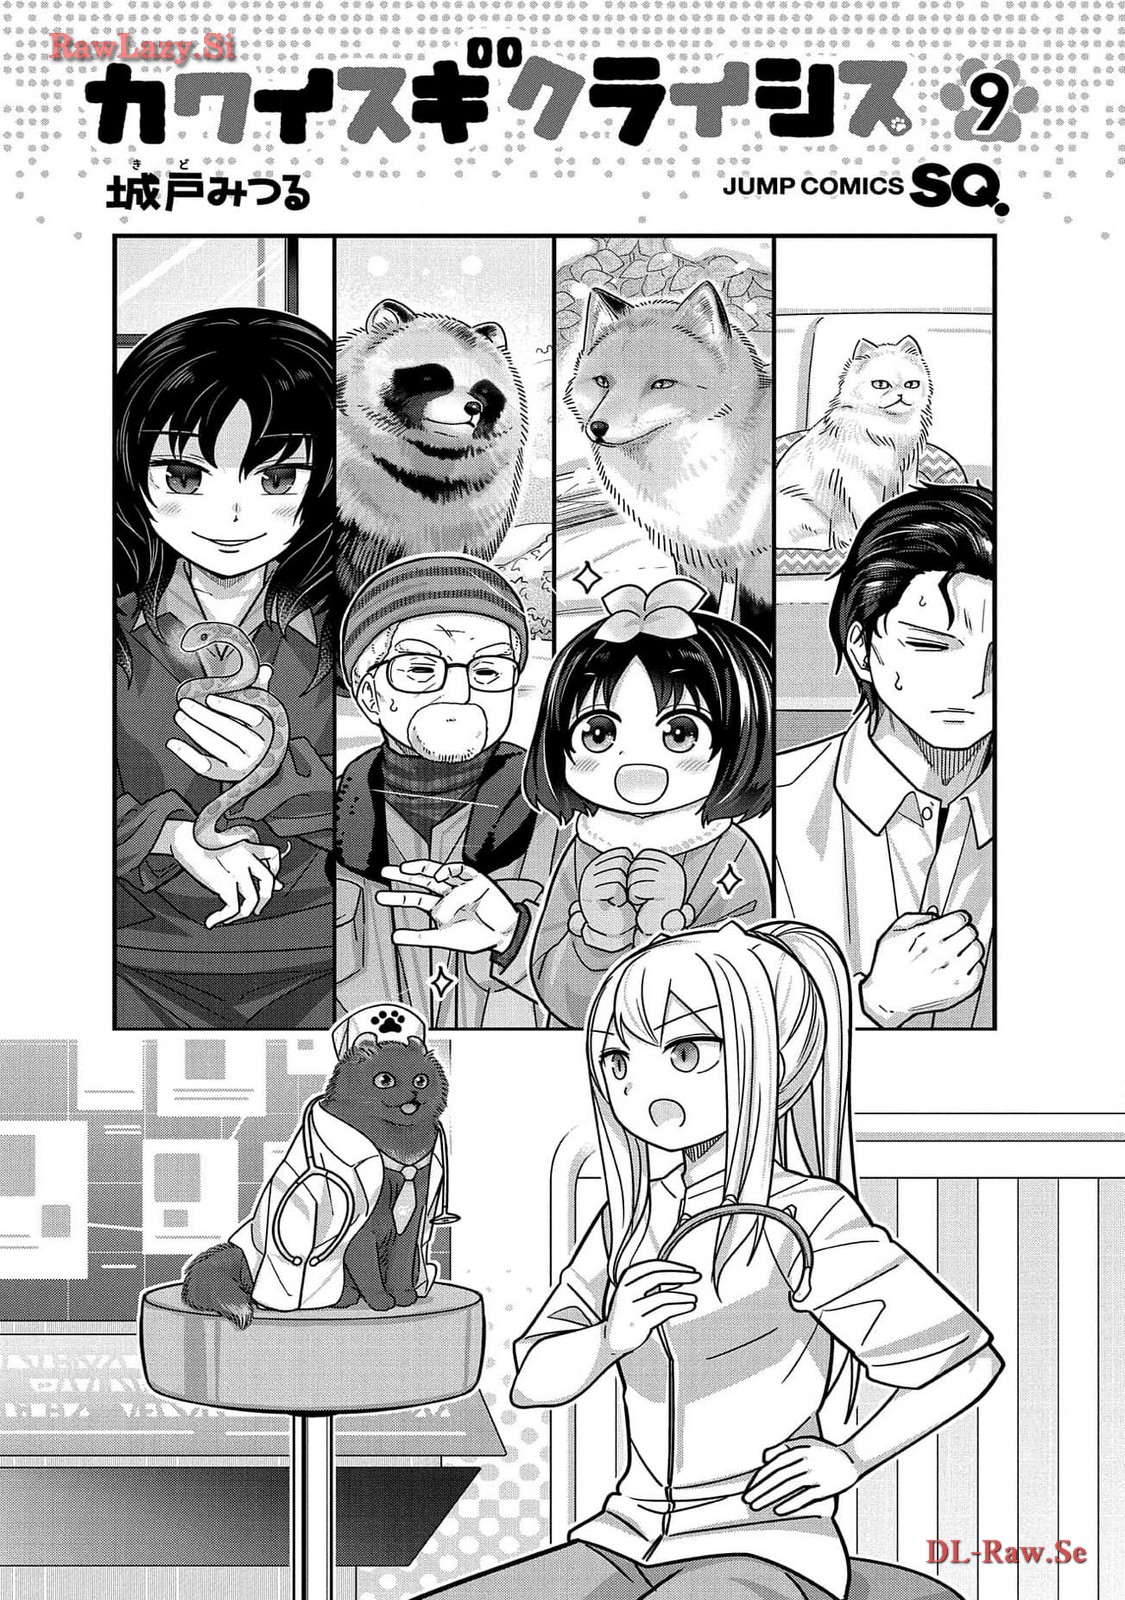 Kawaisugi Crisis - Chapter 97 - Page 5